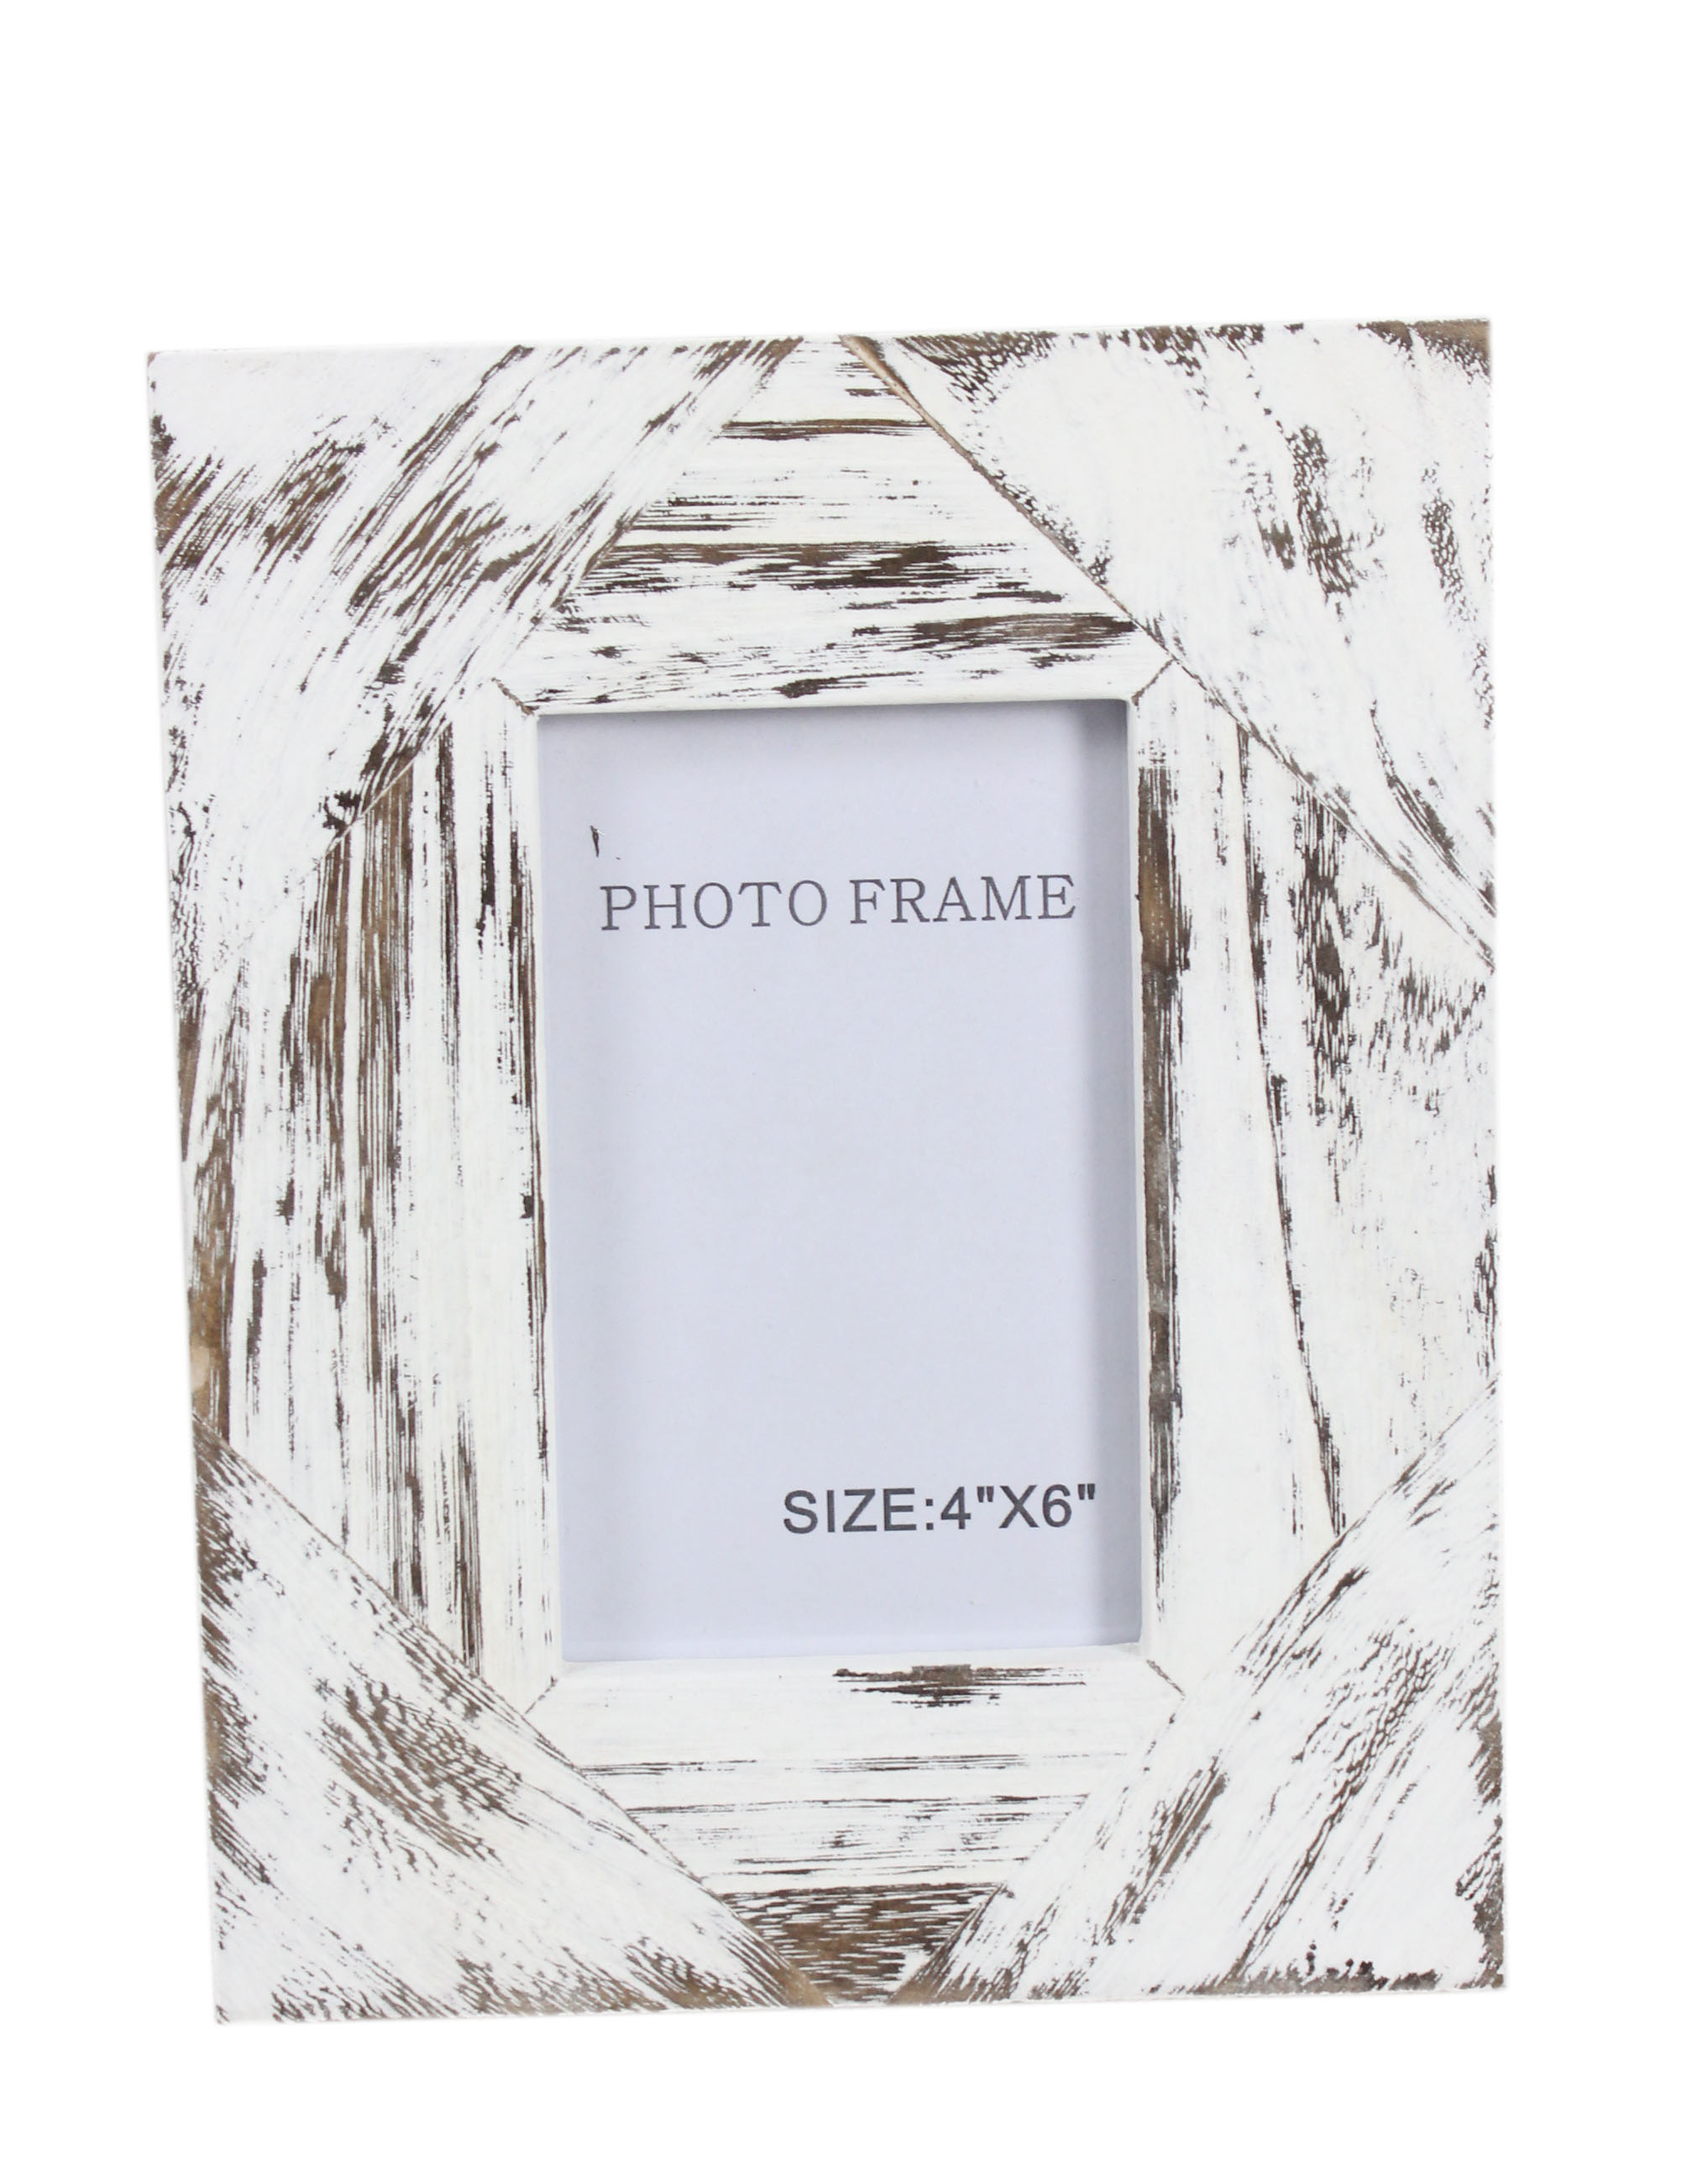 Rustic Frame Mockup,Wooden Frame-5390